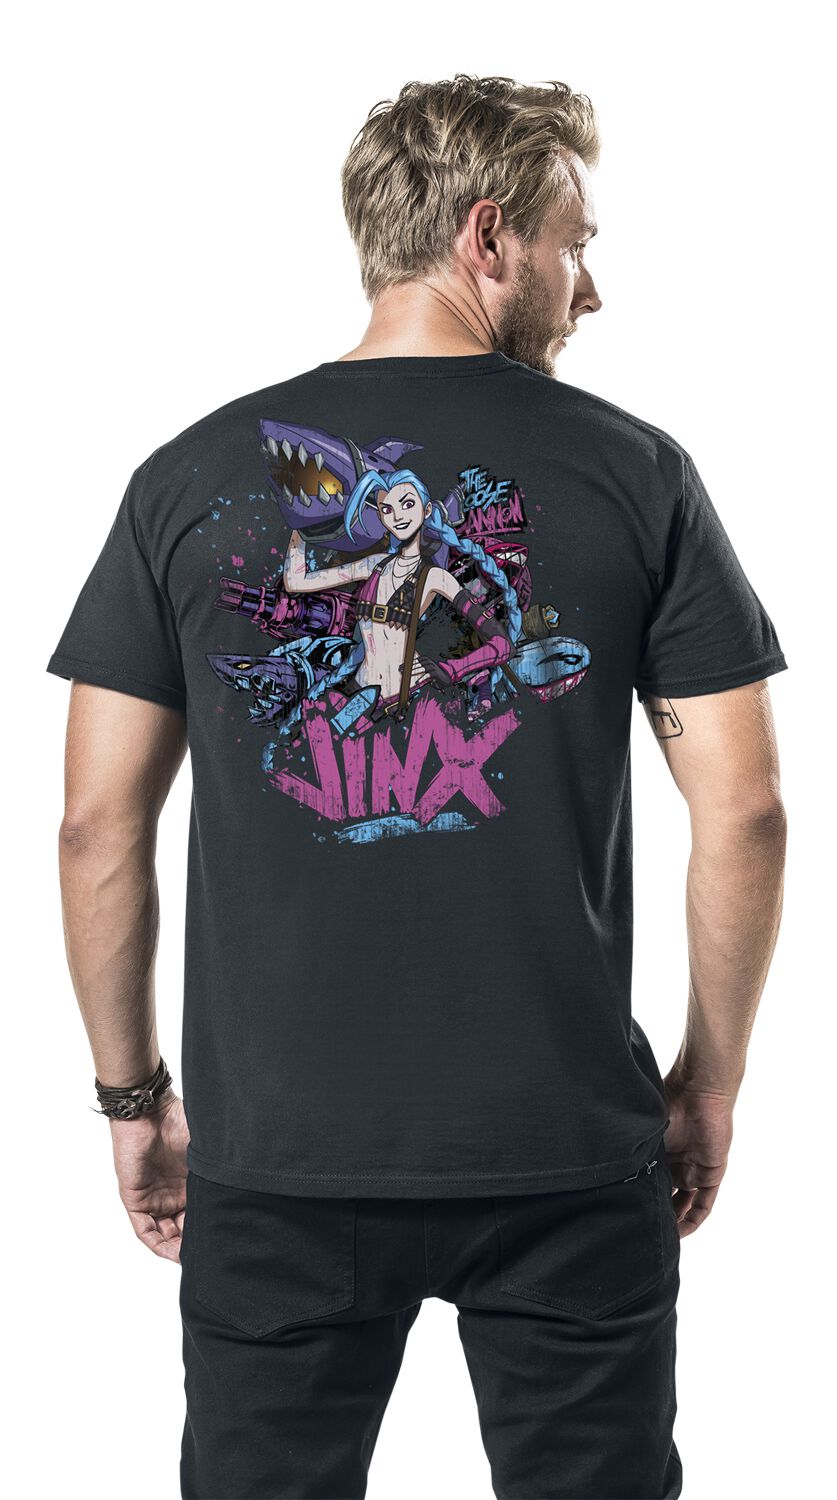 Jinx, League Of Legends T-Shirt